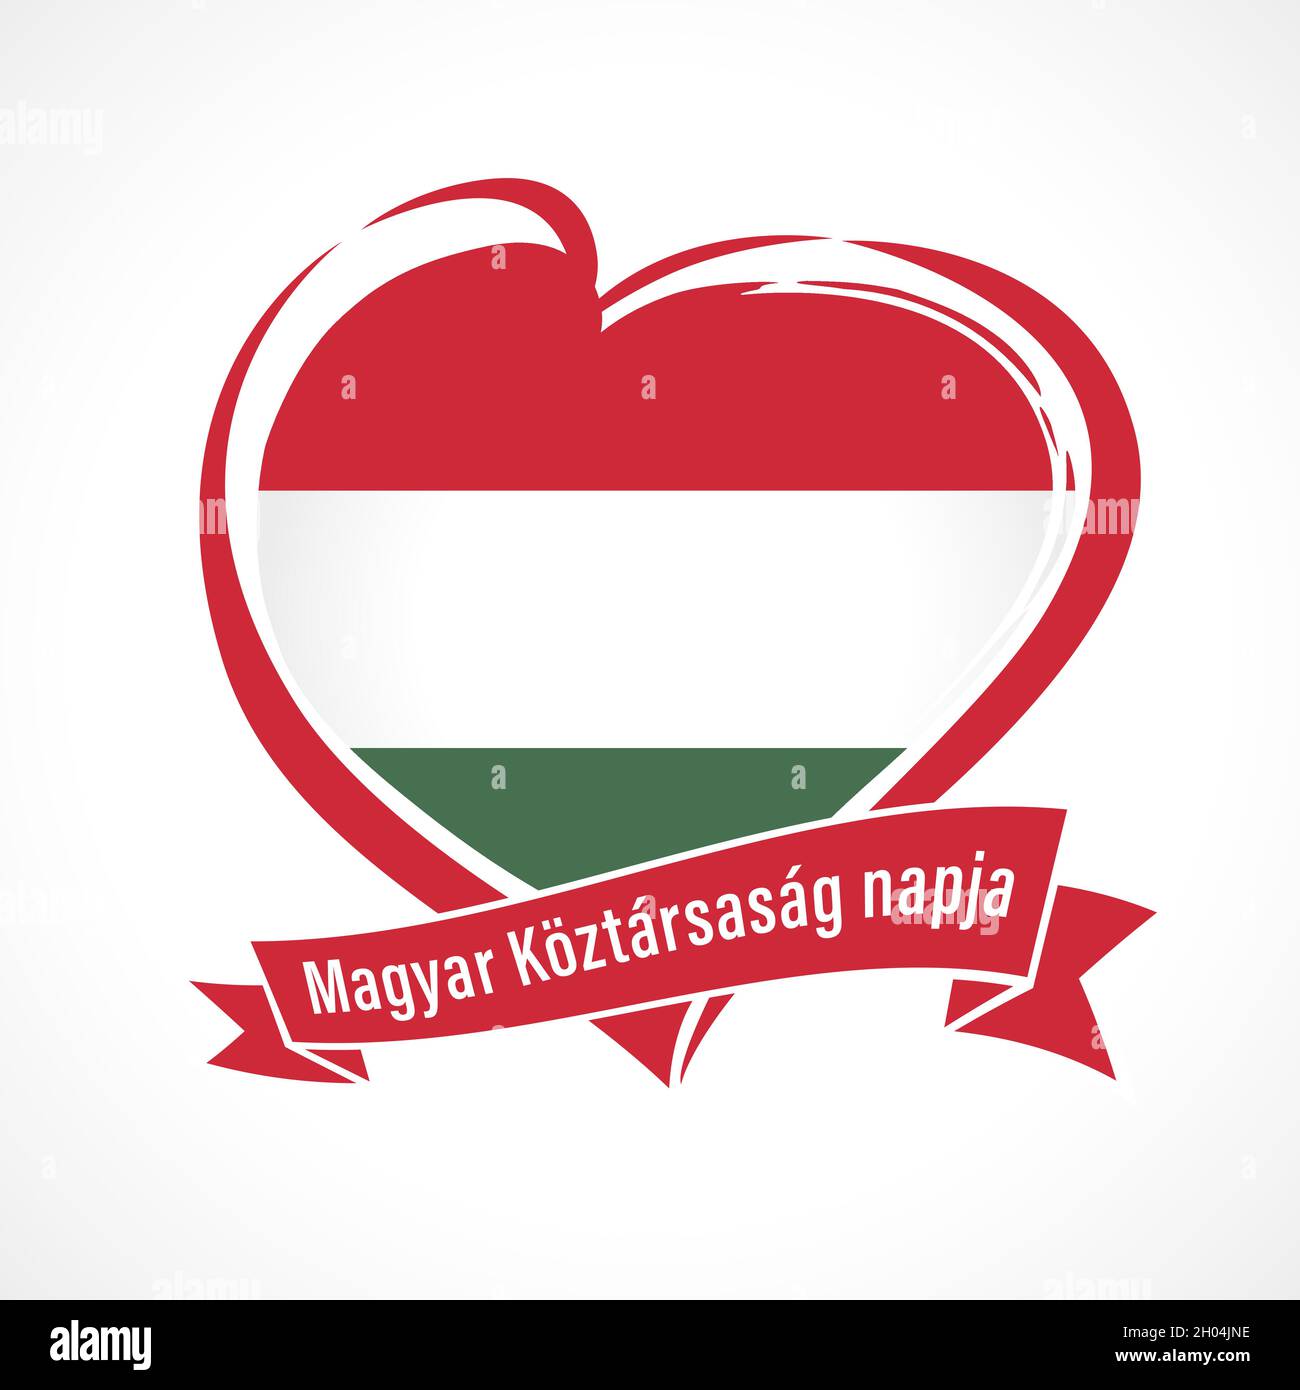 Magyar Koztarsasag napja - testo sul nastro Giornata della Repubblica Ungherese. Vettore Ungheria bandiera a forma di cuore per Magyarorszag giorno di fondazione isolato su bianco Illustrazione Vettoriale